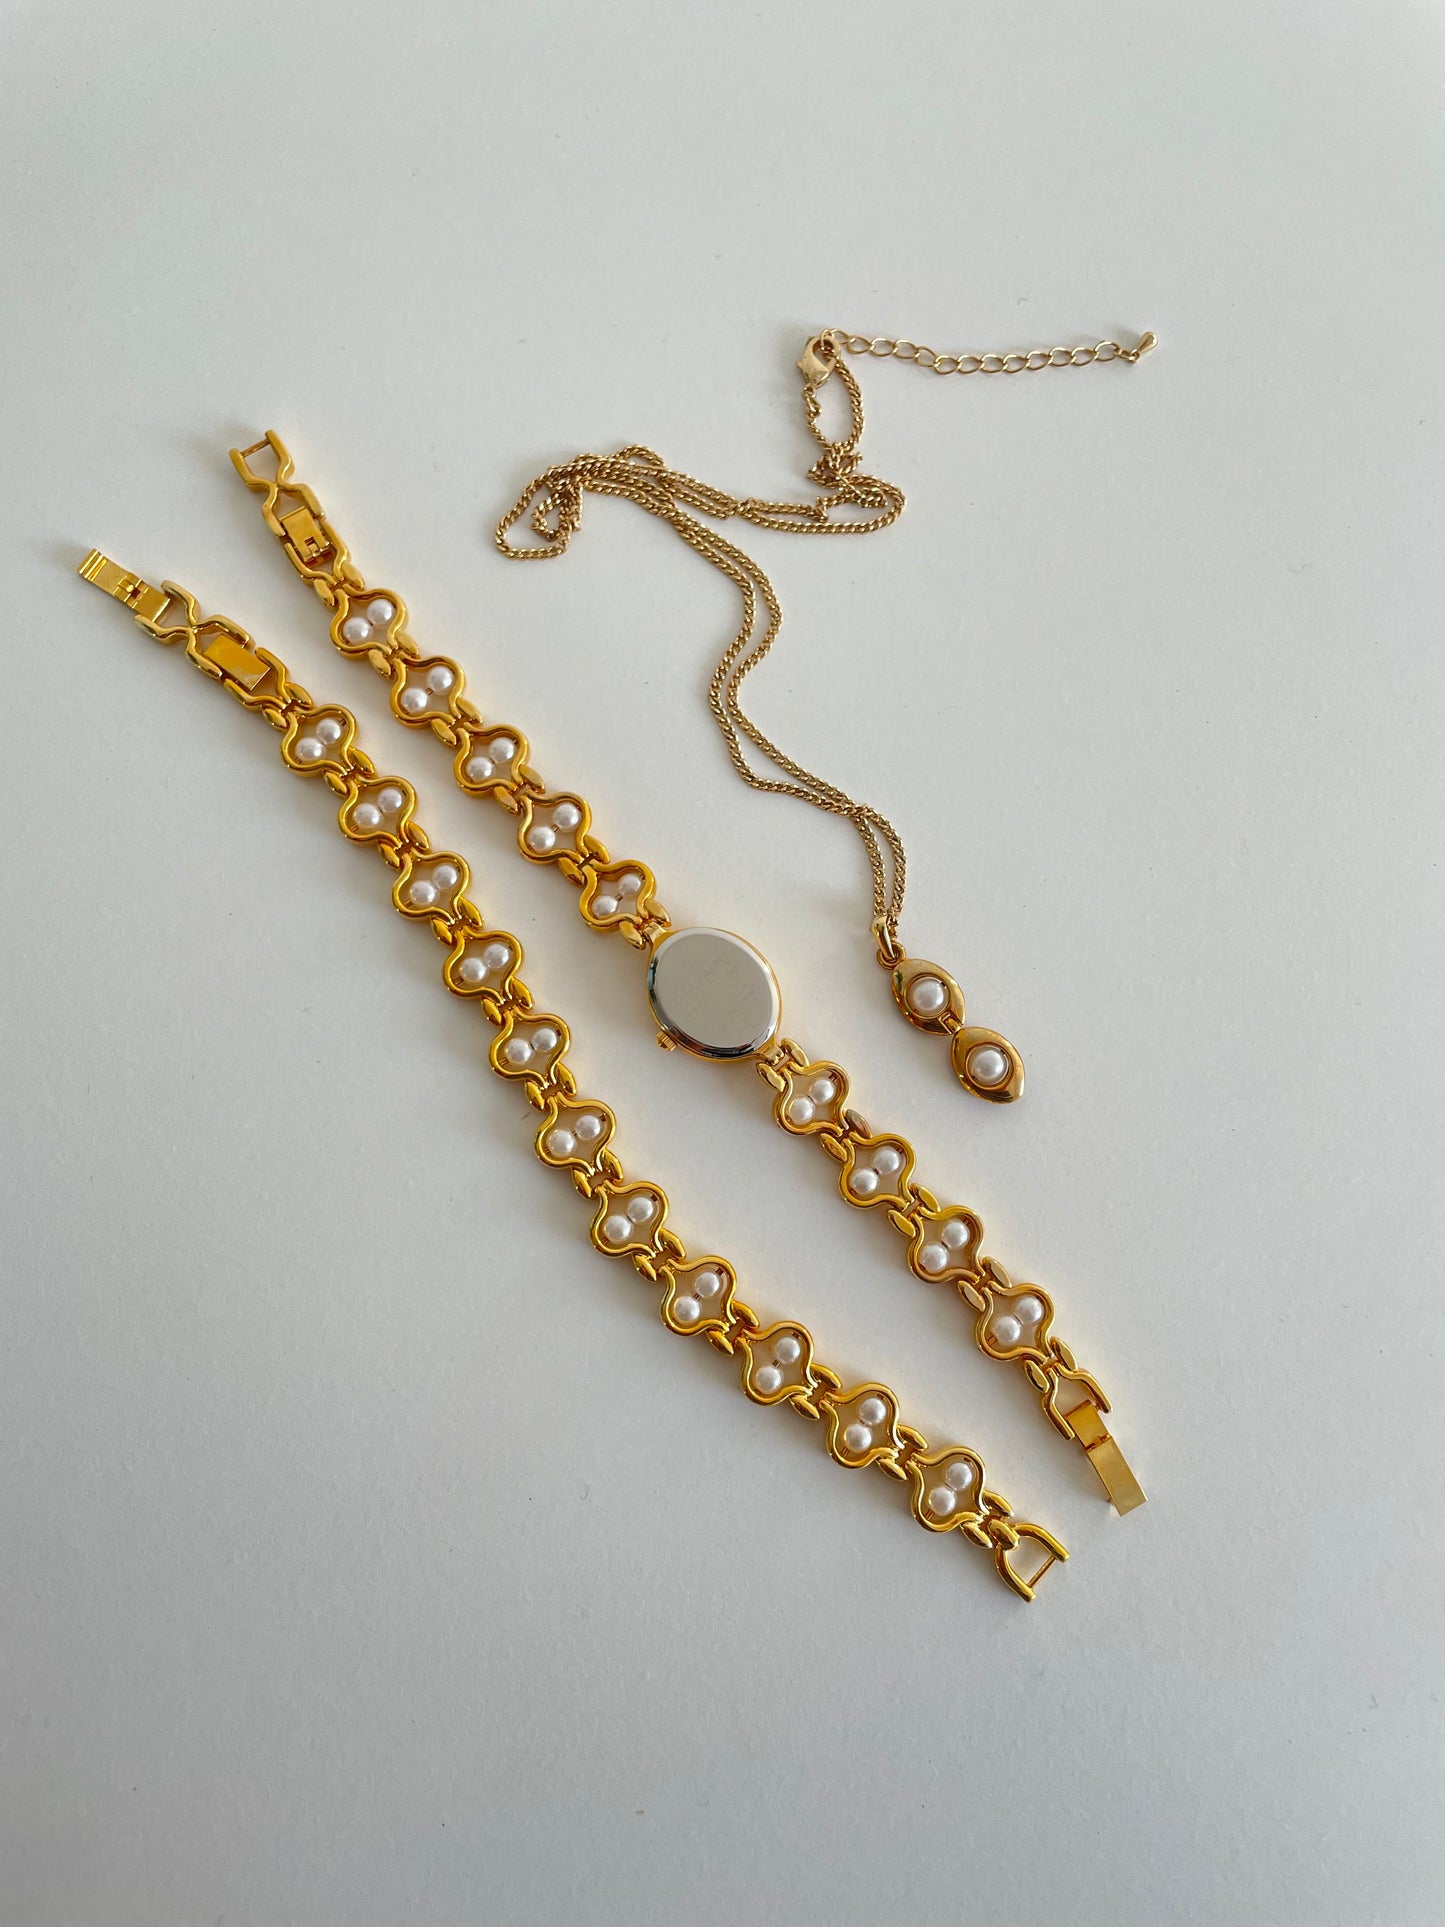 The Saskia Watch, Necklace & Bracelet Set